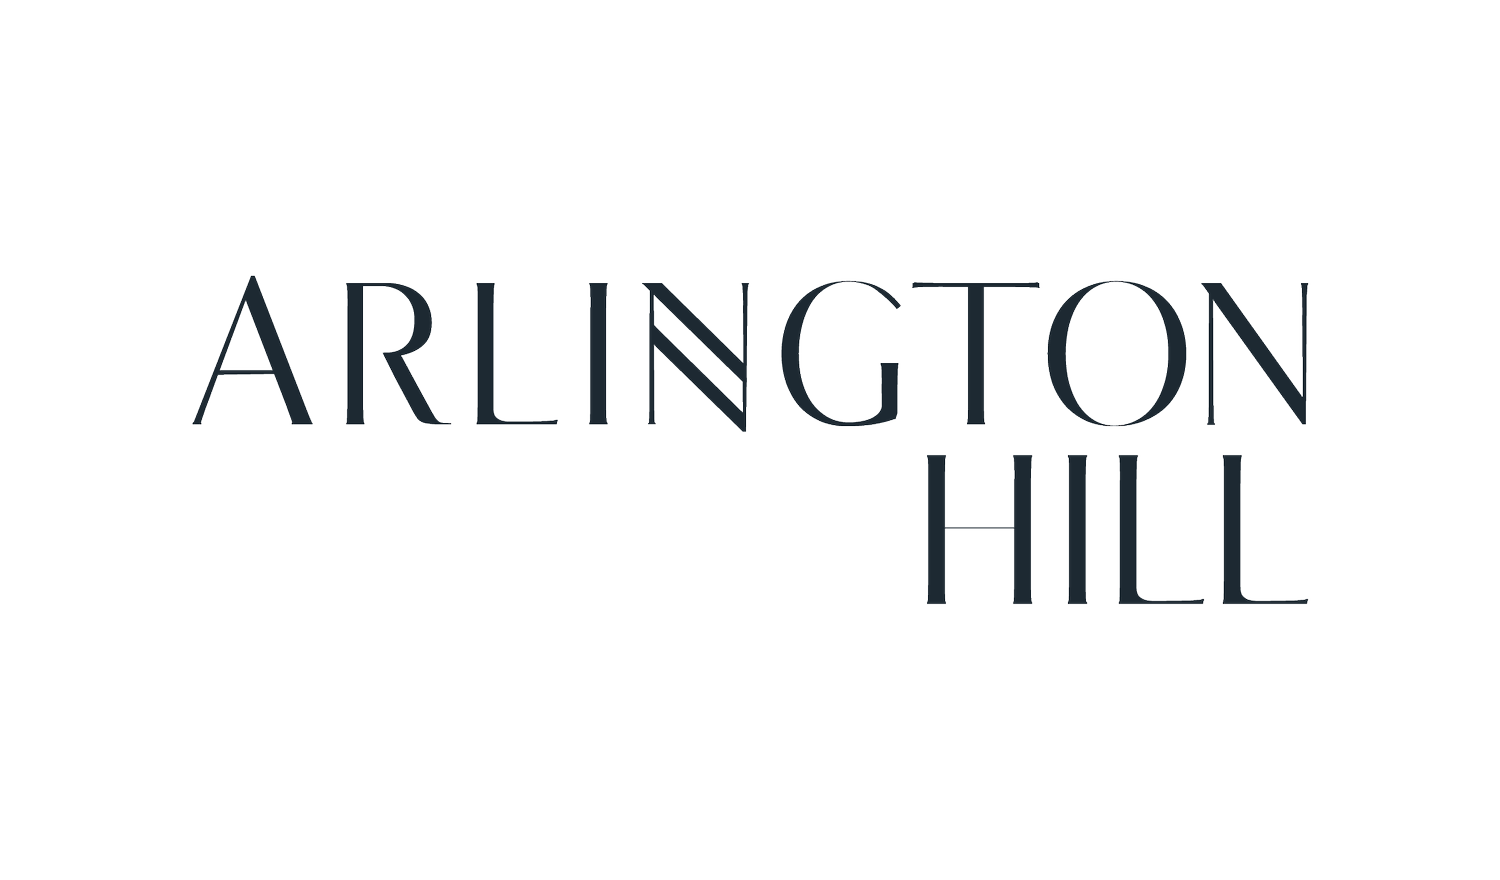 Arlington Hill